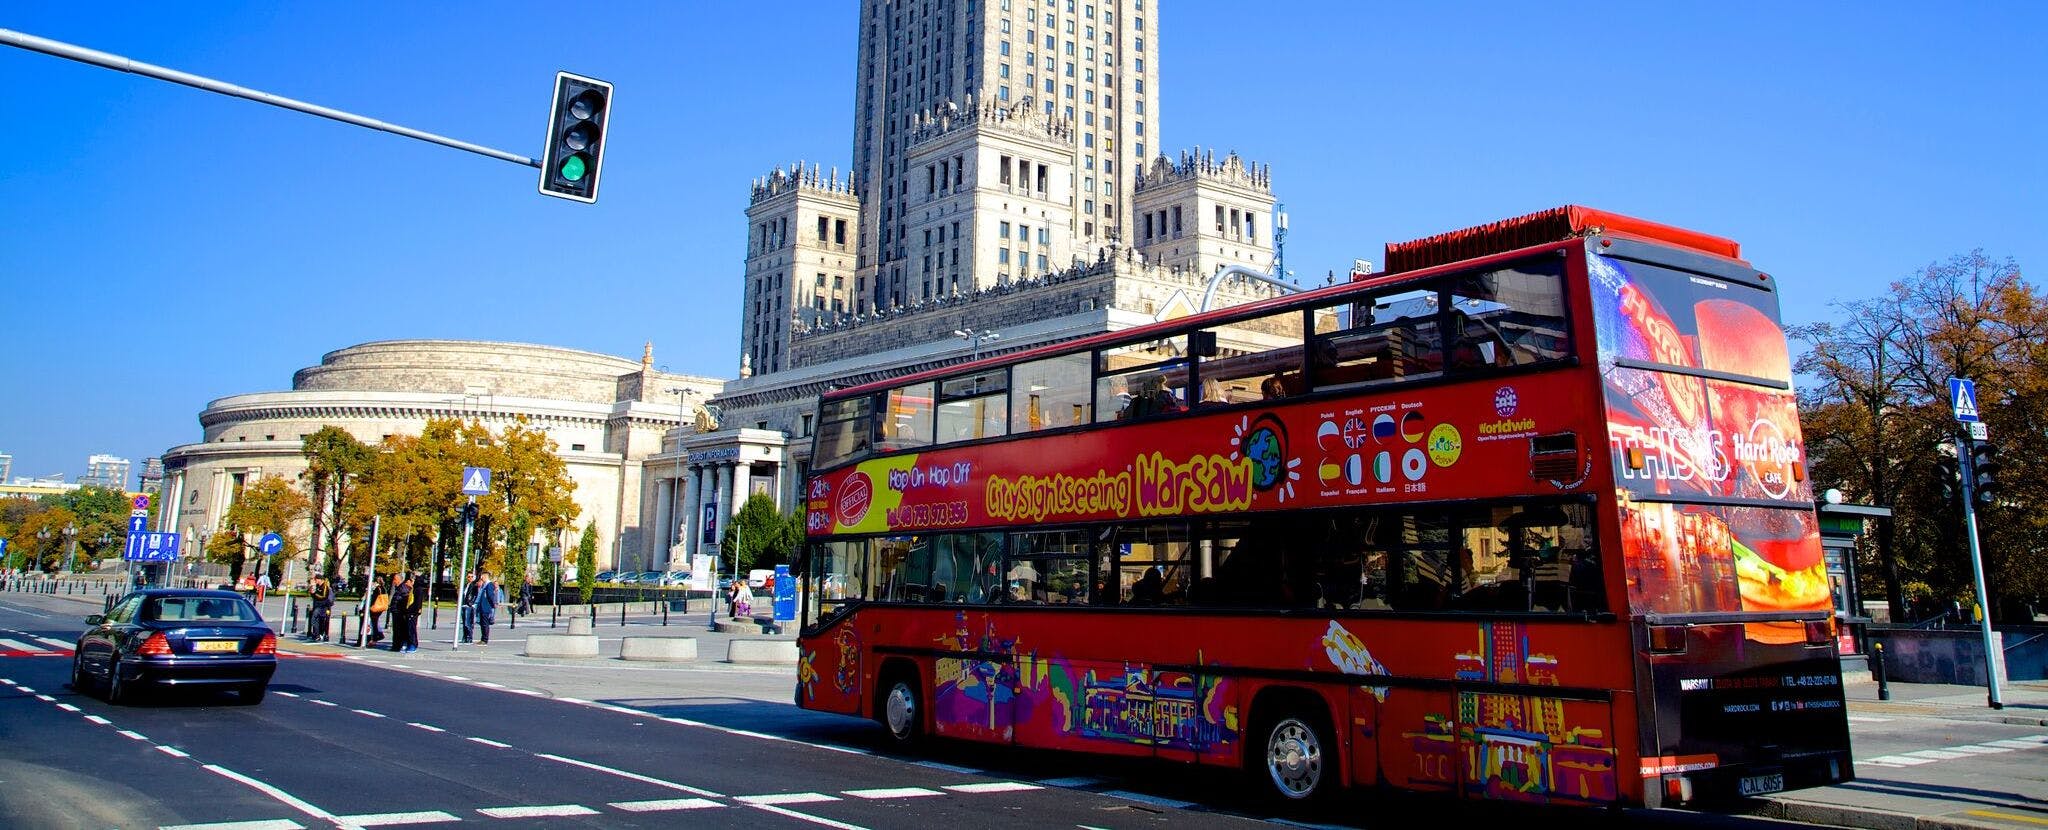 Hoppa på och hoppa av-Warszawa busspass - 24, 48 eller 72 timmar